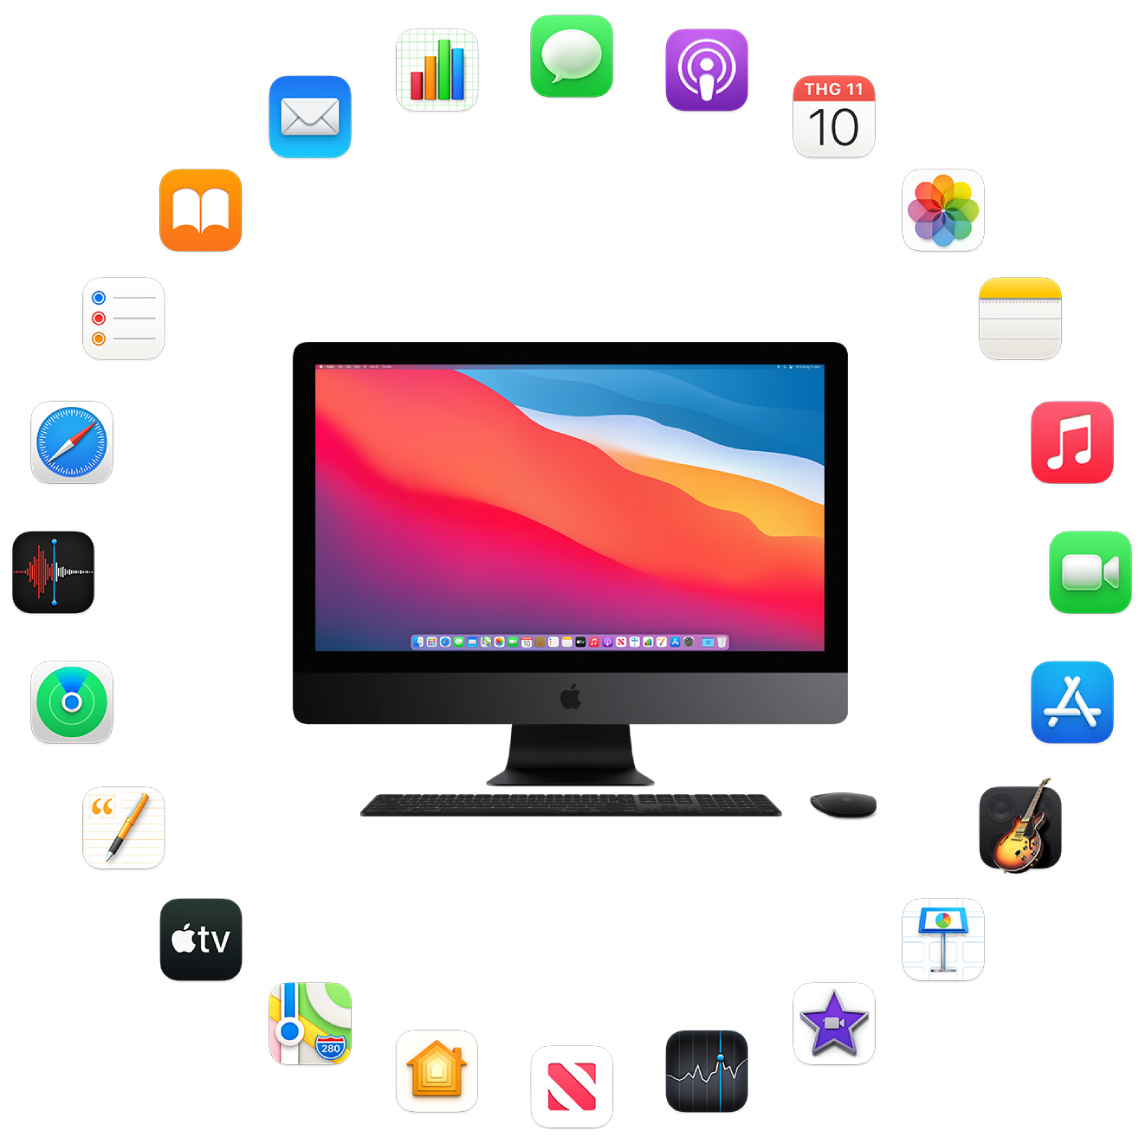 iMac Pro được bao quanh bởi biểu tượng cho các ứng dụng tích hợp được mô tả trong các phần sau.